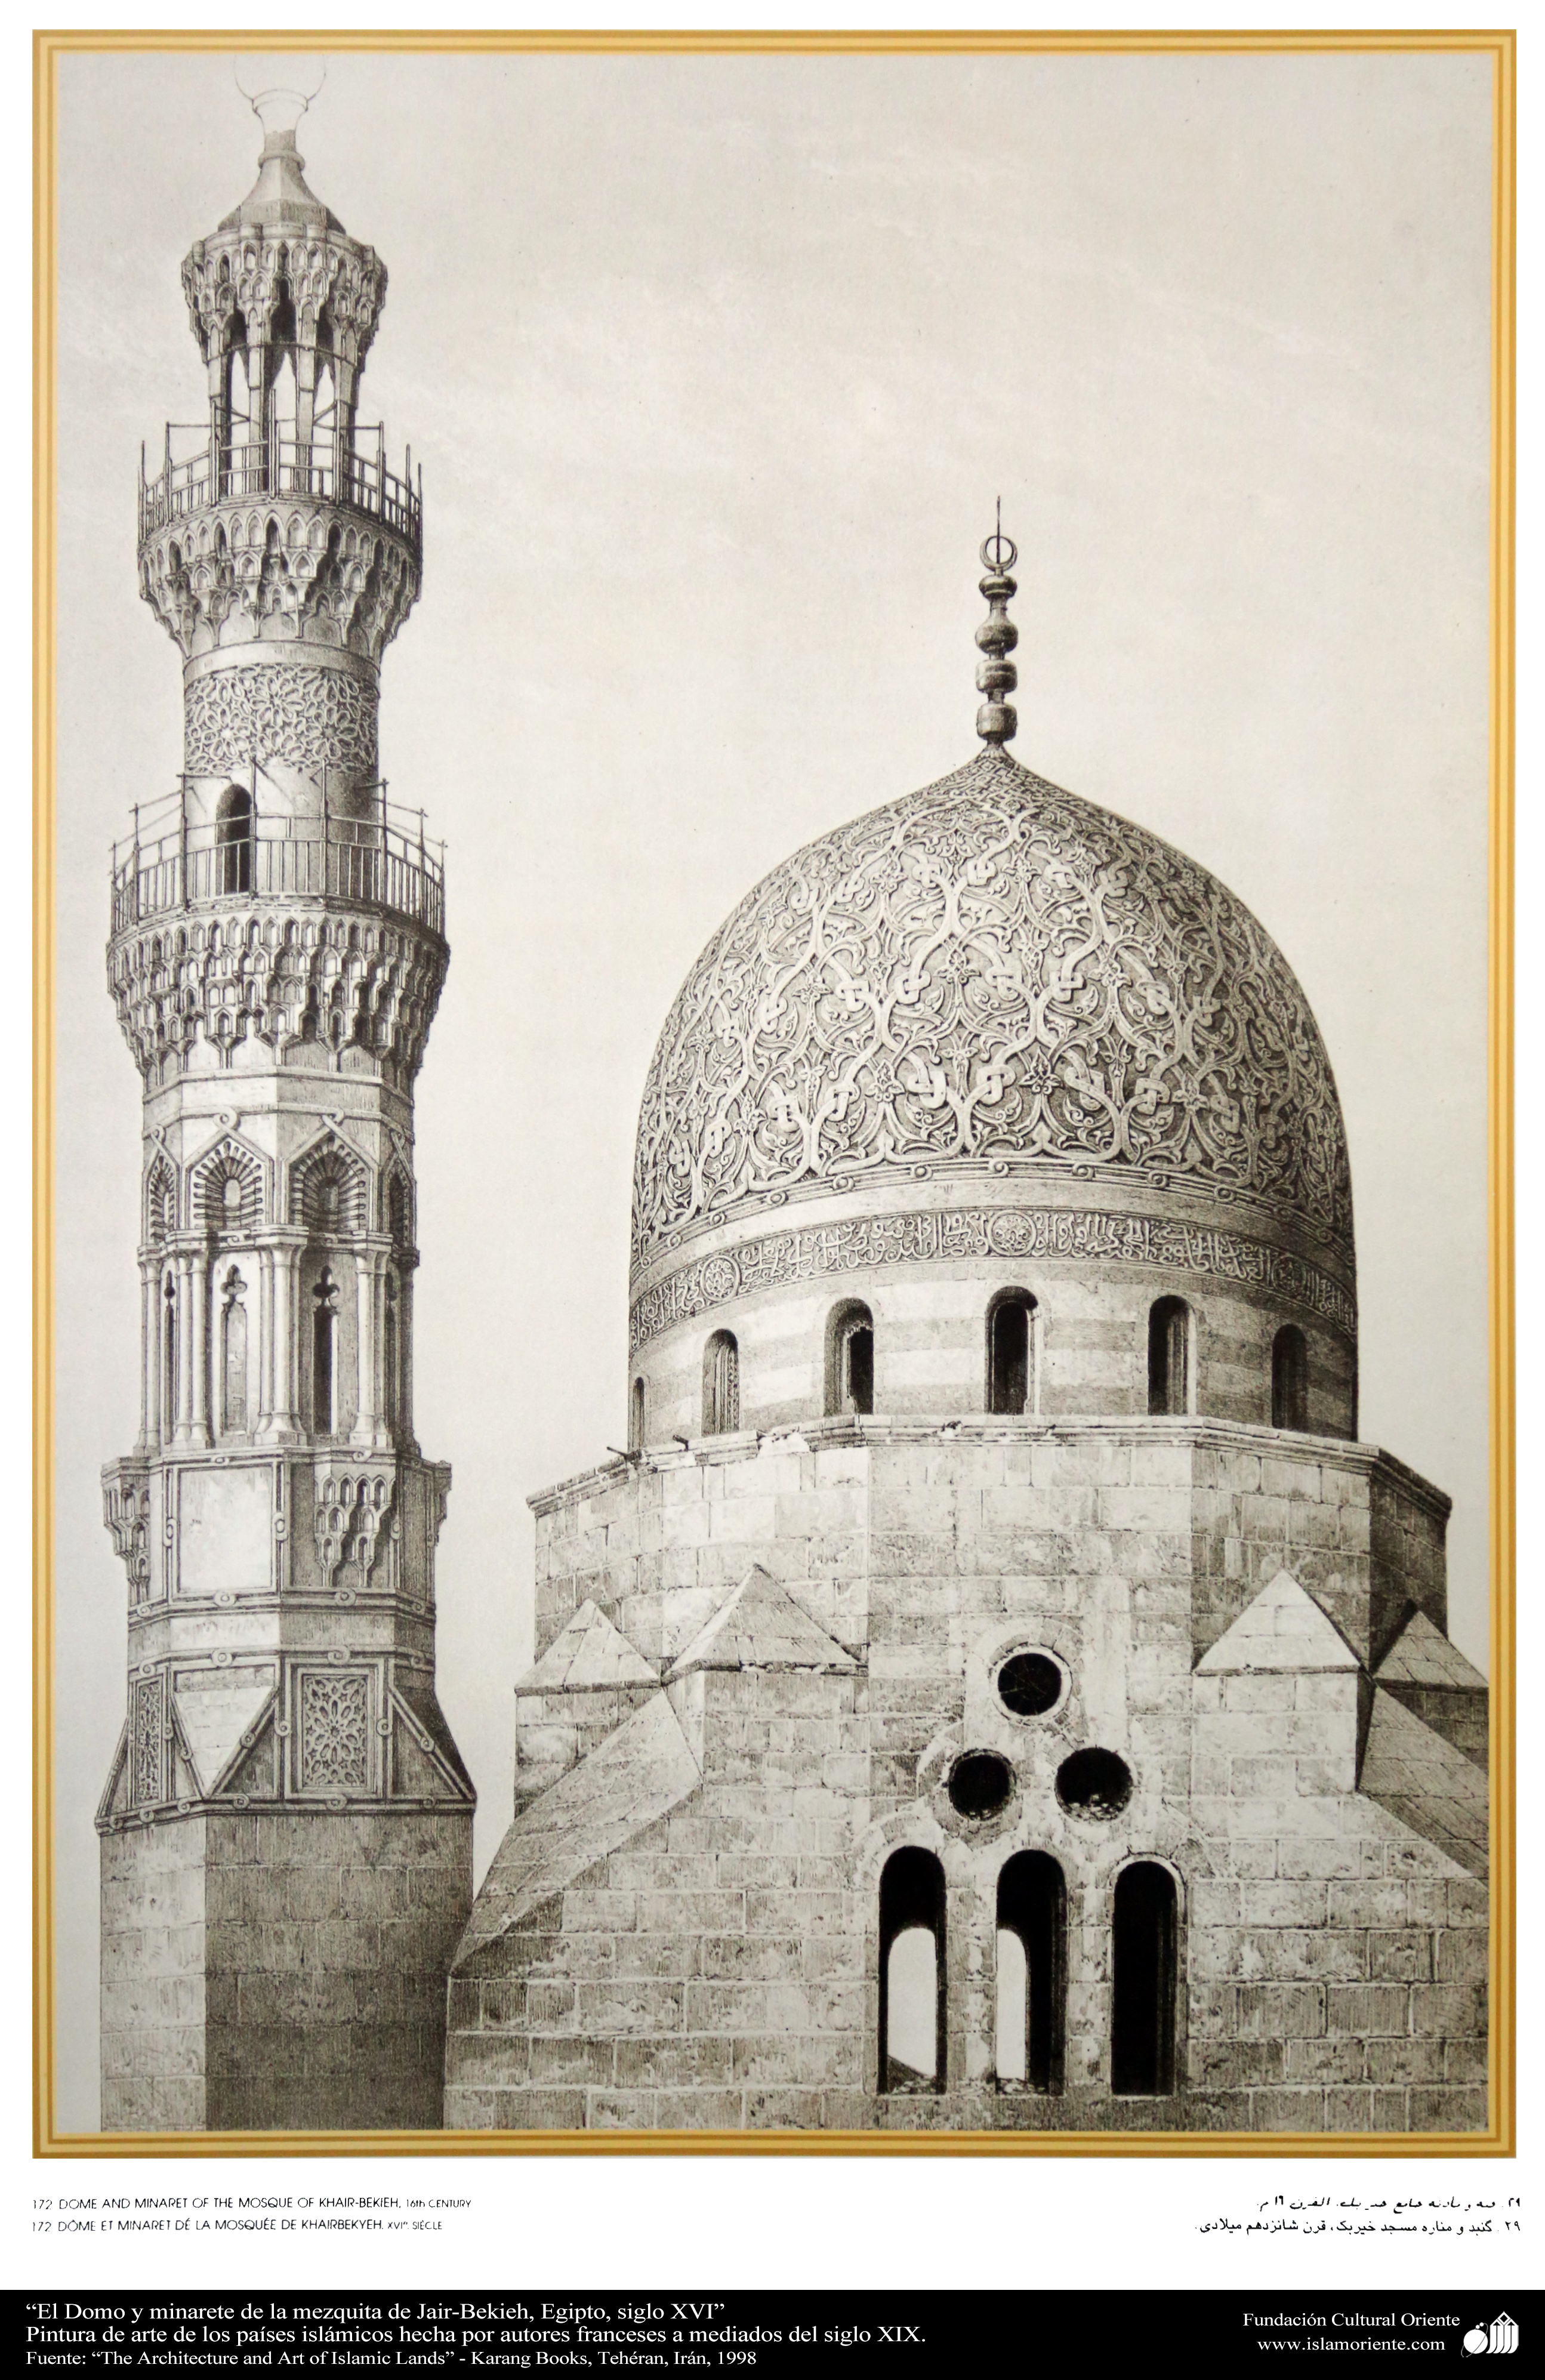 يستخدم التماثل الكلي في تزيين جدران المساجد والقصور والقباب والمآذن والأعمدة